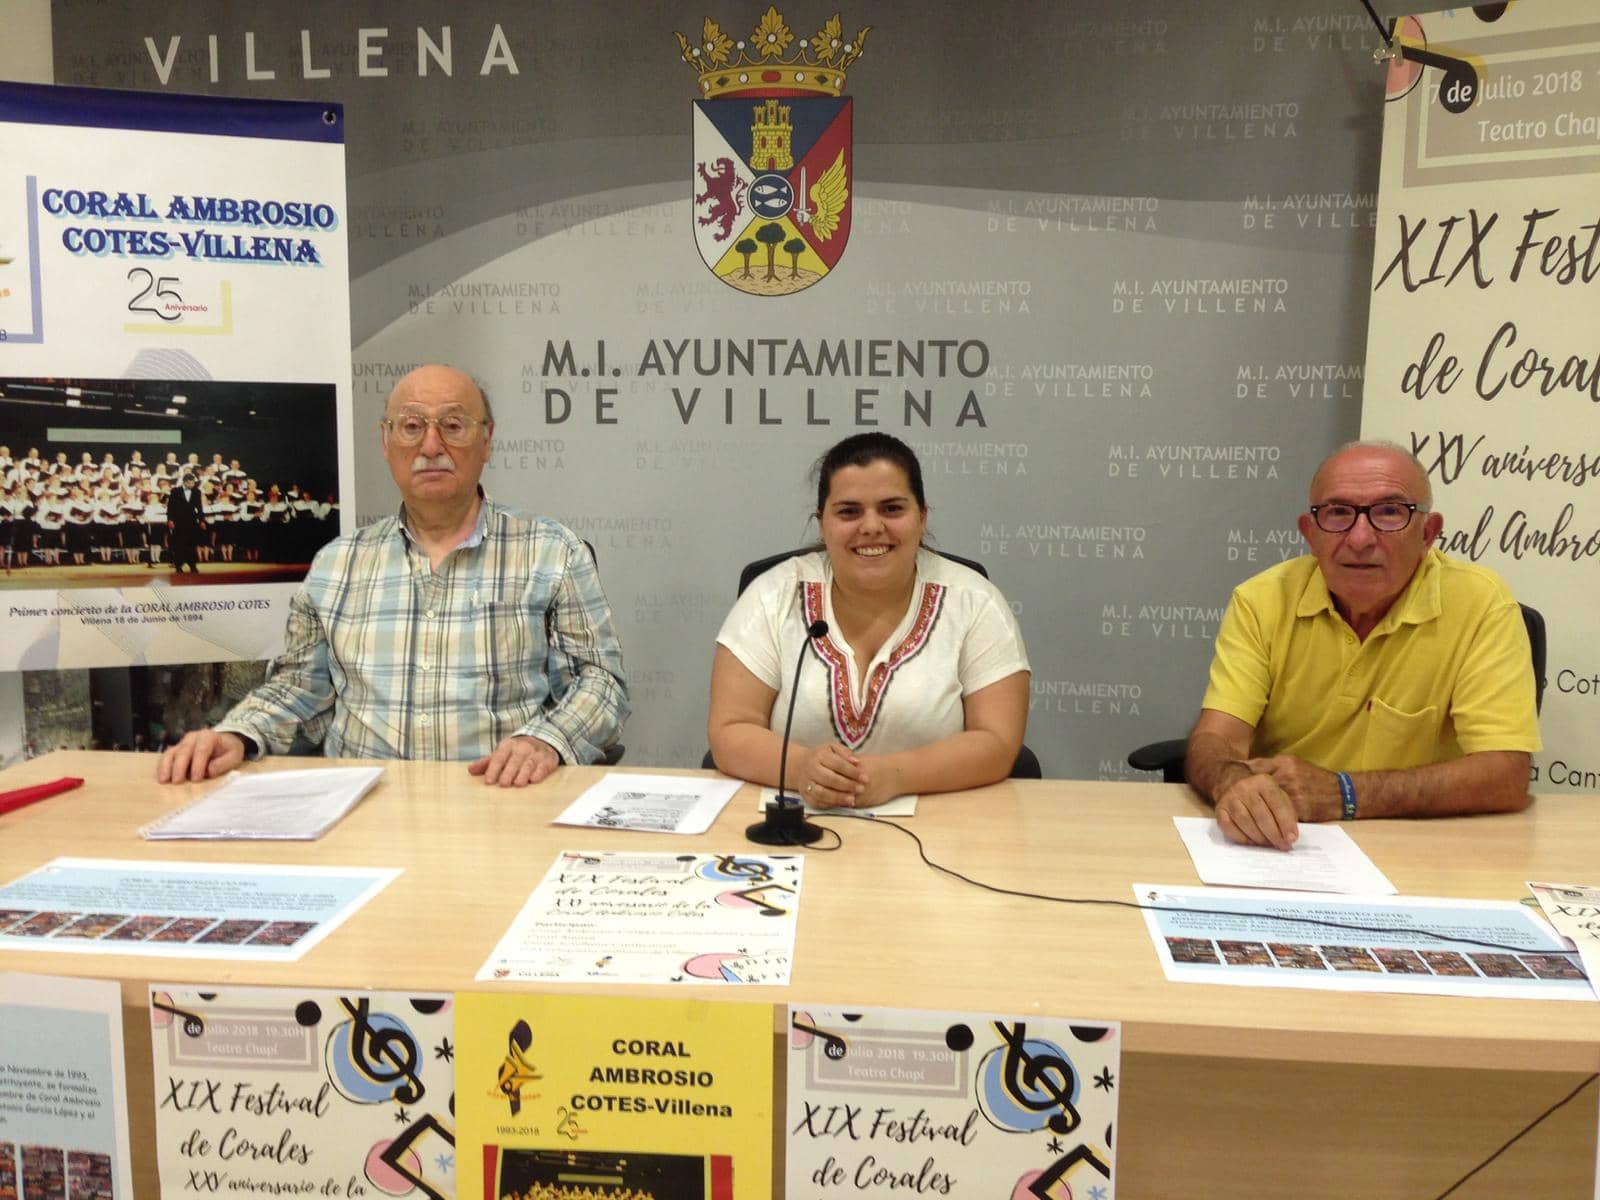 La Coral Ambrosio Cotes invita a los vecinos de Villena a celebrar su XXV aniversario con el XIX Festival de Corales